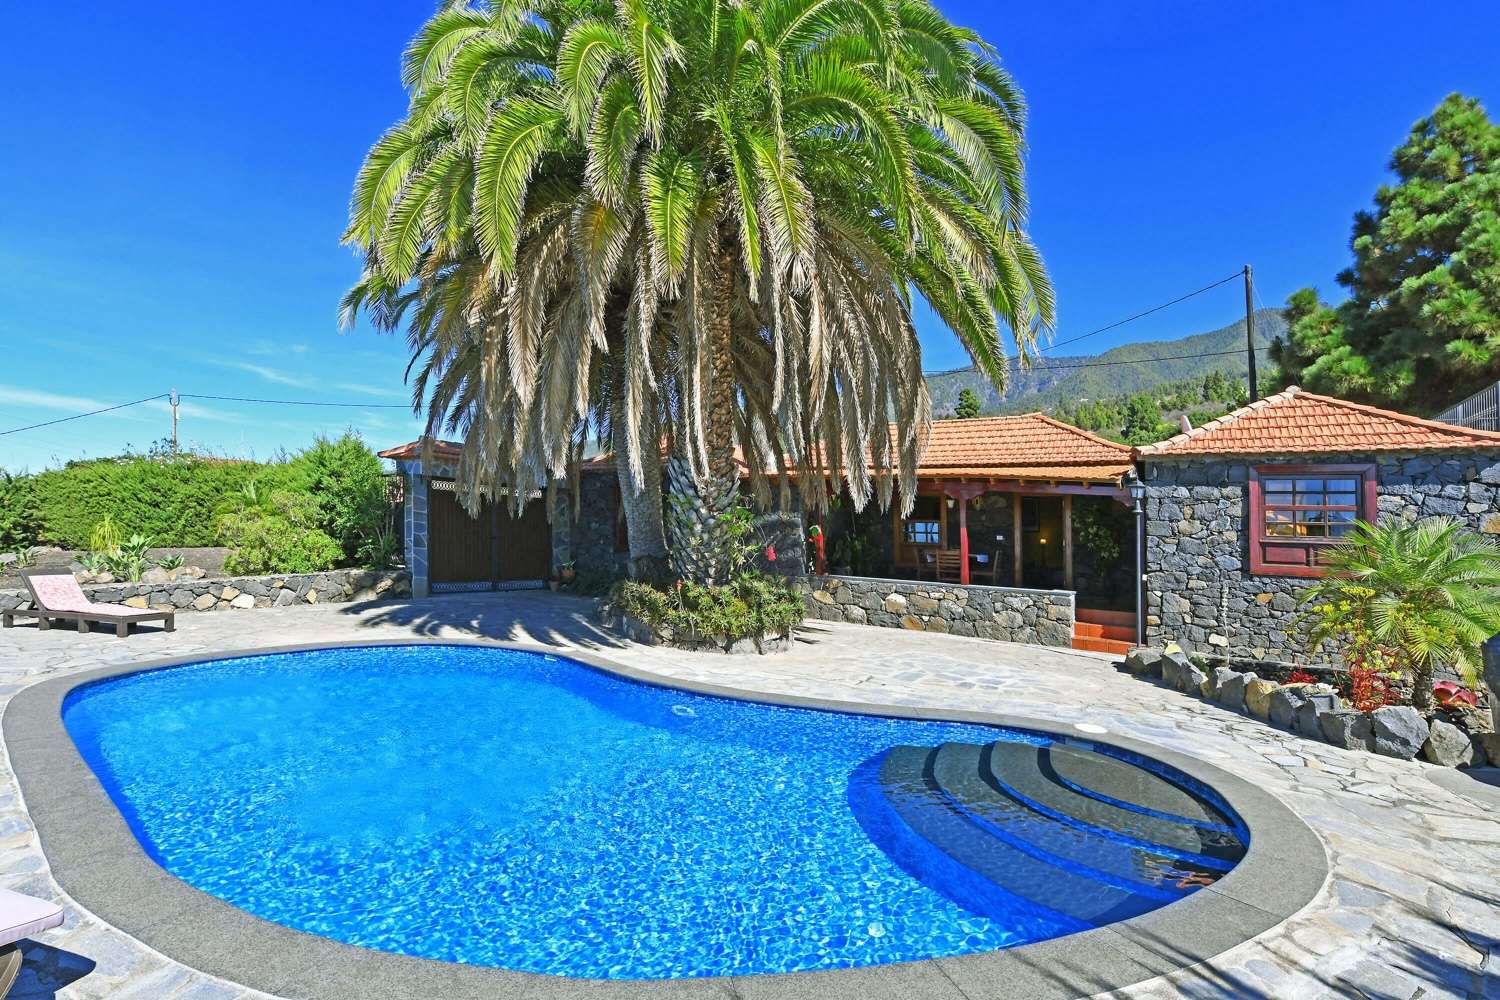 Belle maison de deux chambres à l'architecture originale en pierre des Canaries avec un magnifique jardin avec de majestueux palmiers et une piscine privée